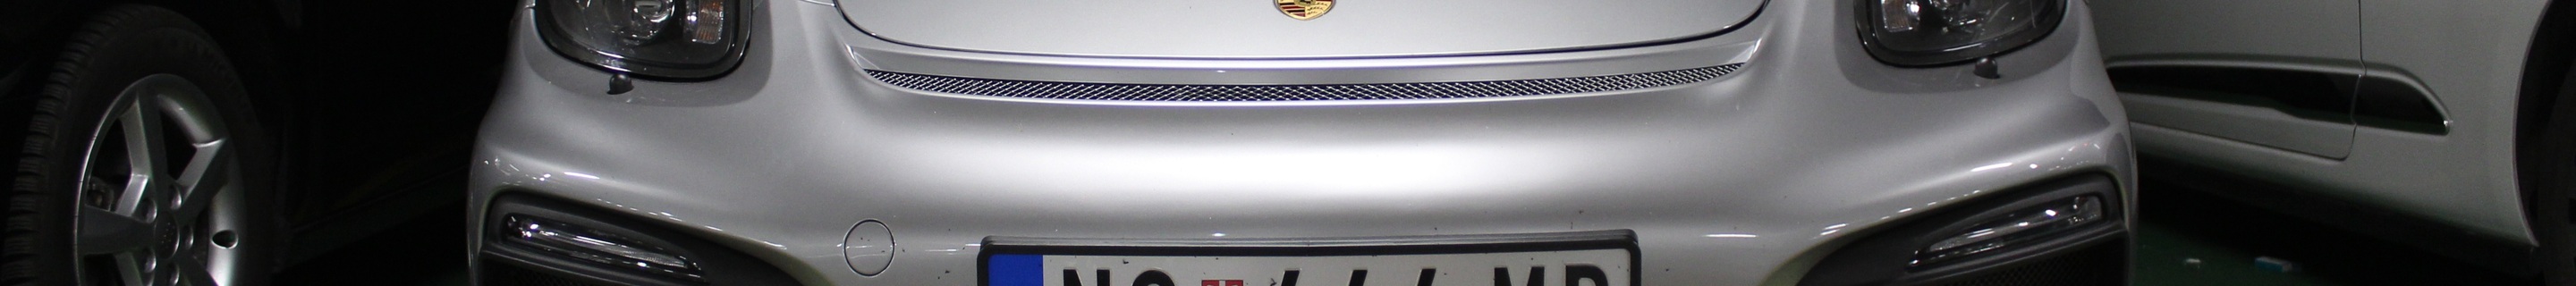 Porsche 981 Cayman GT4